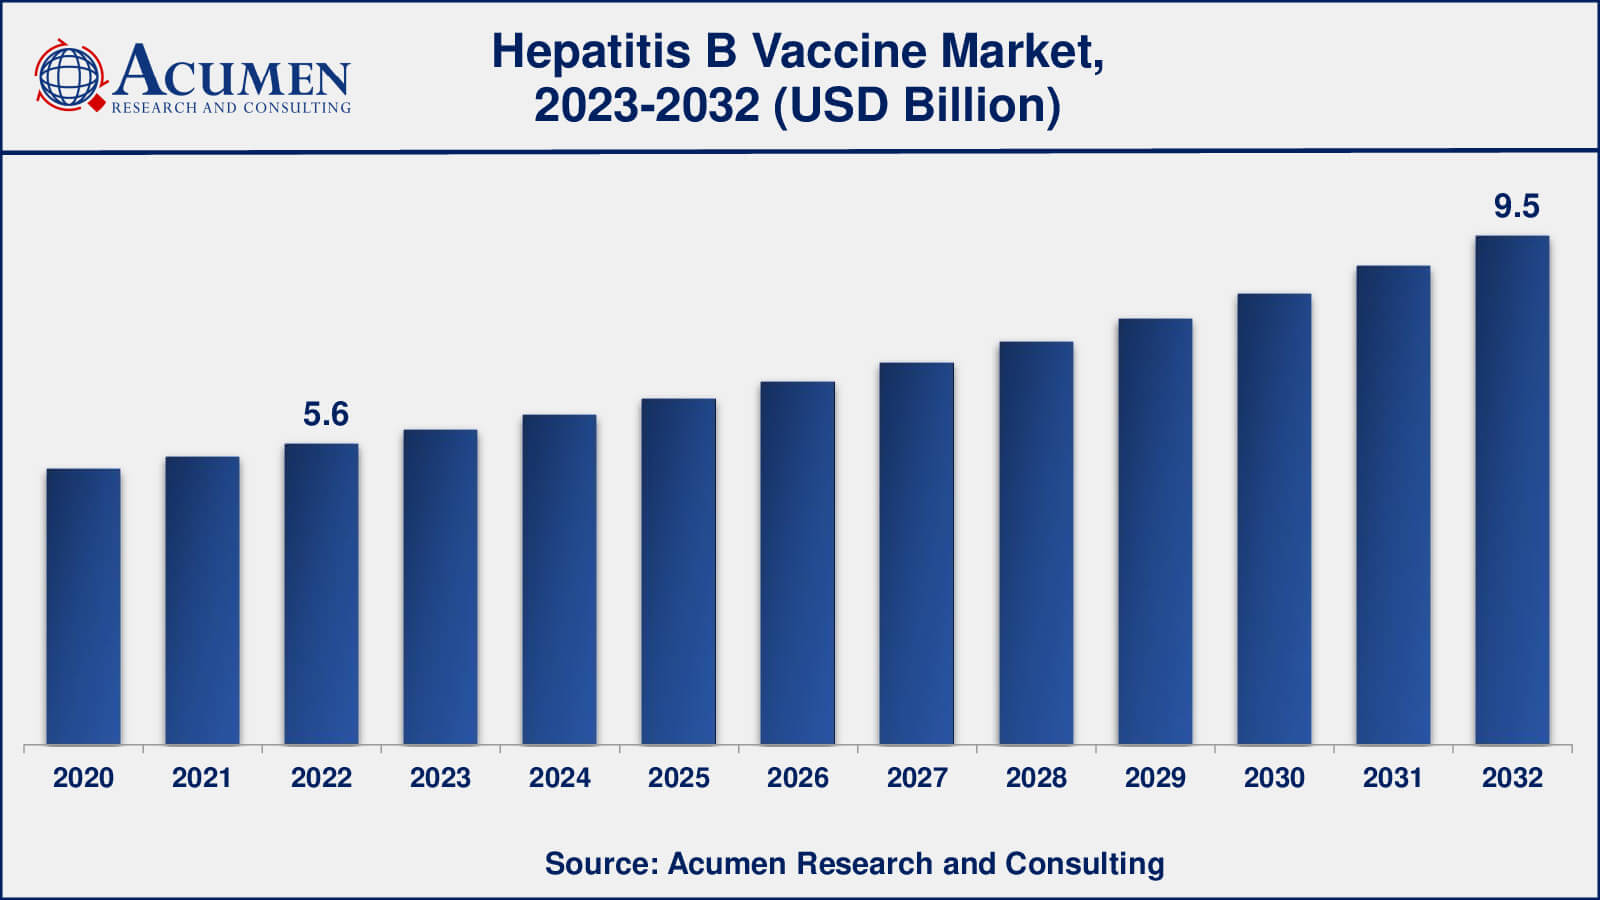 Hepatitis B Vaccine Market Drivers